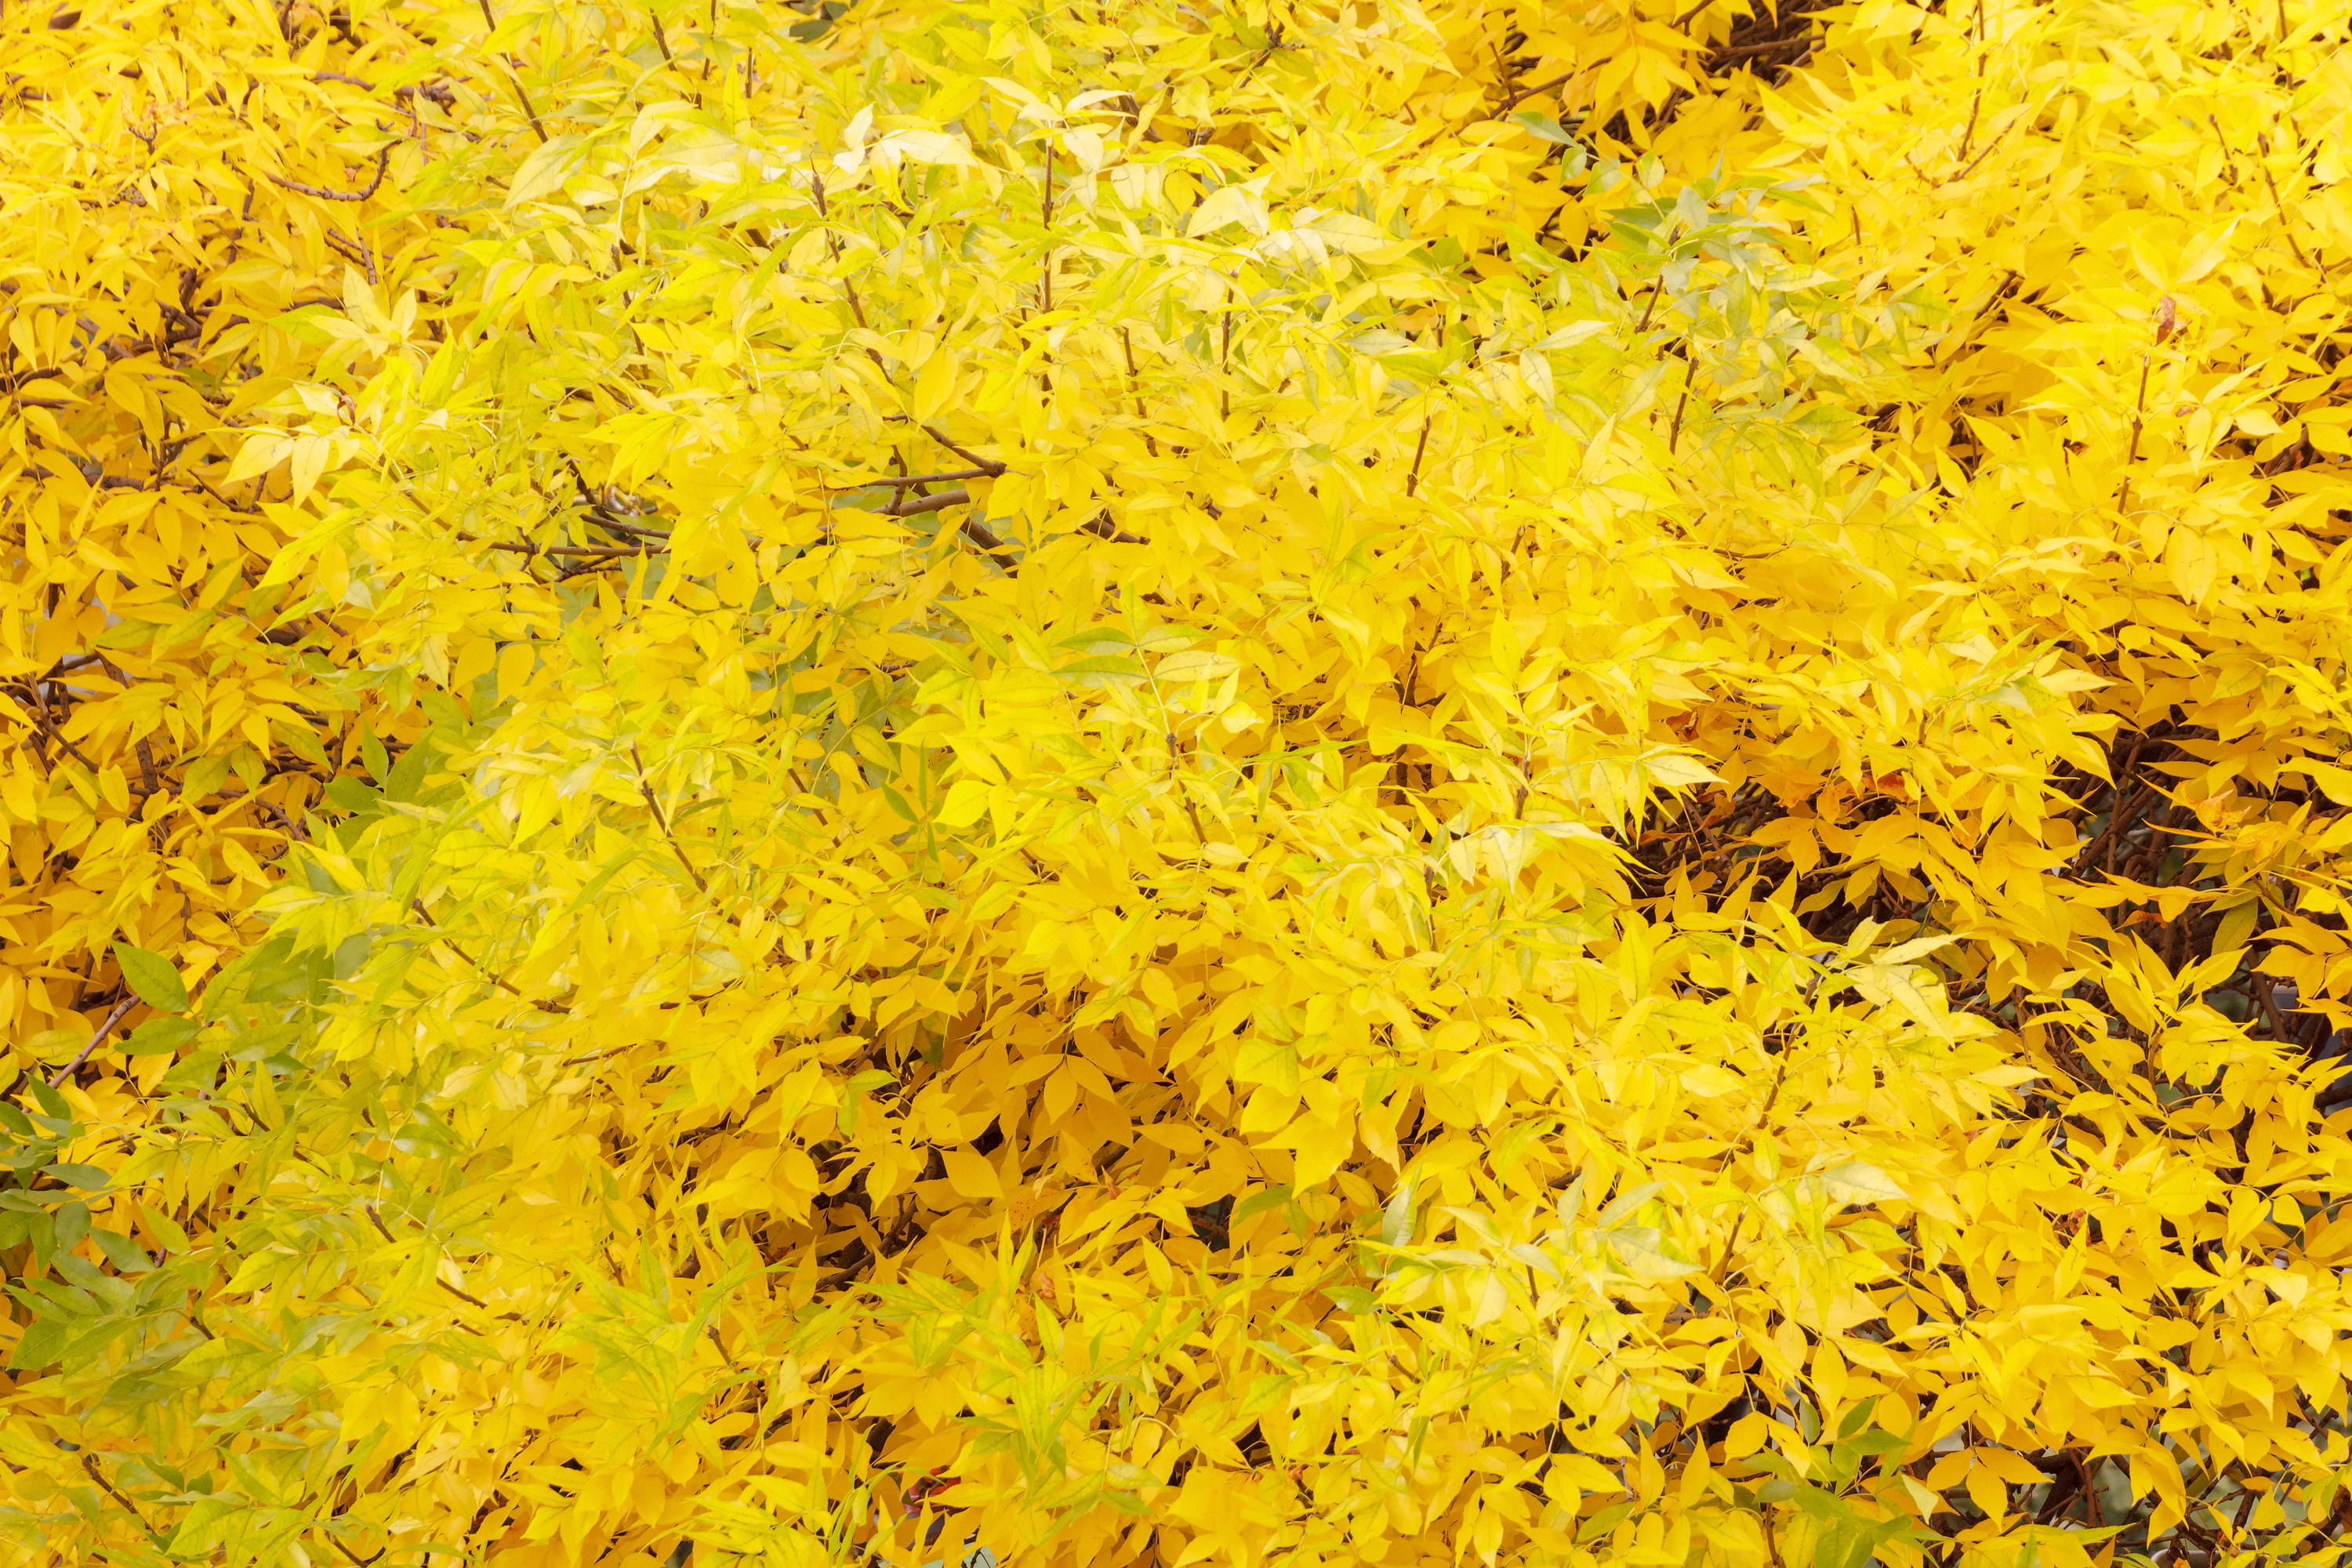 Thick yellow foliage